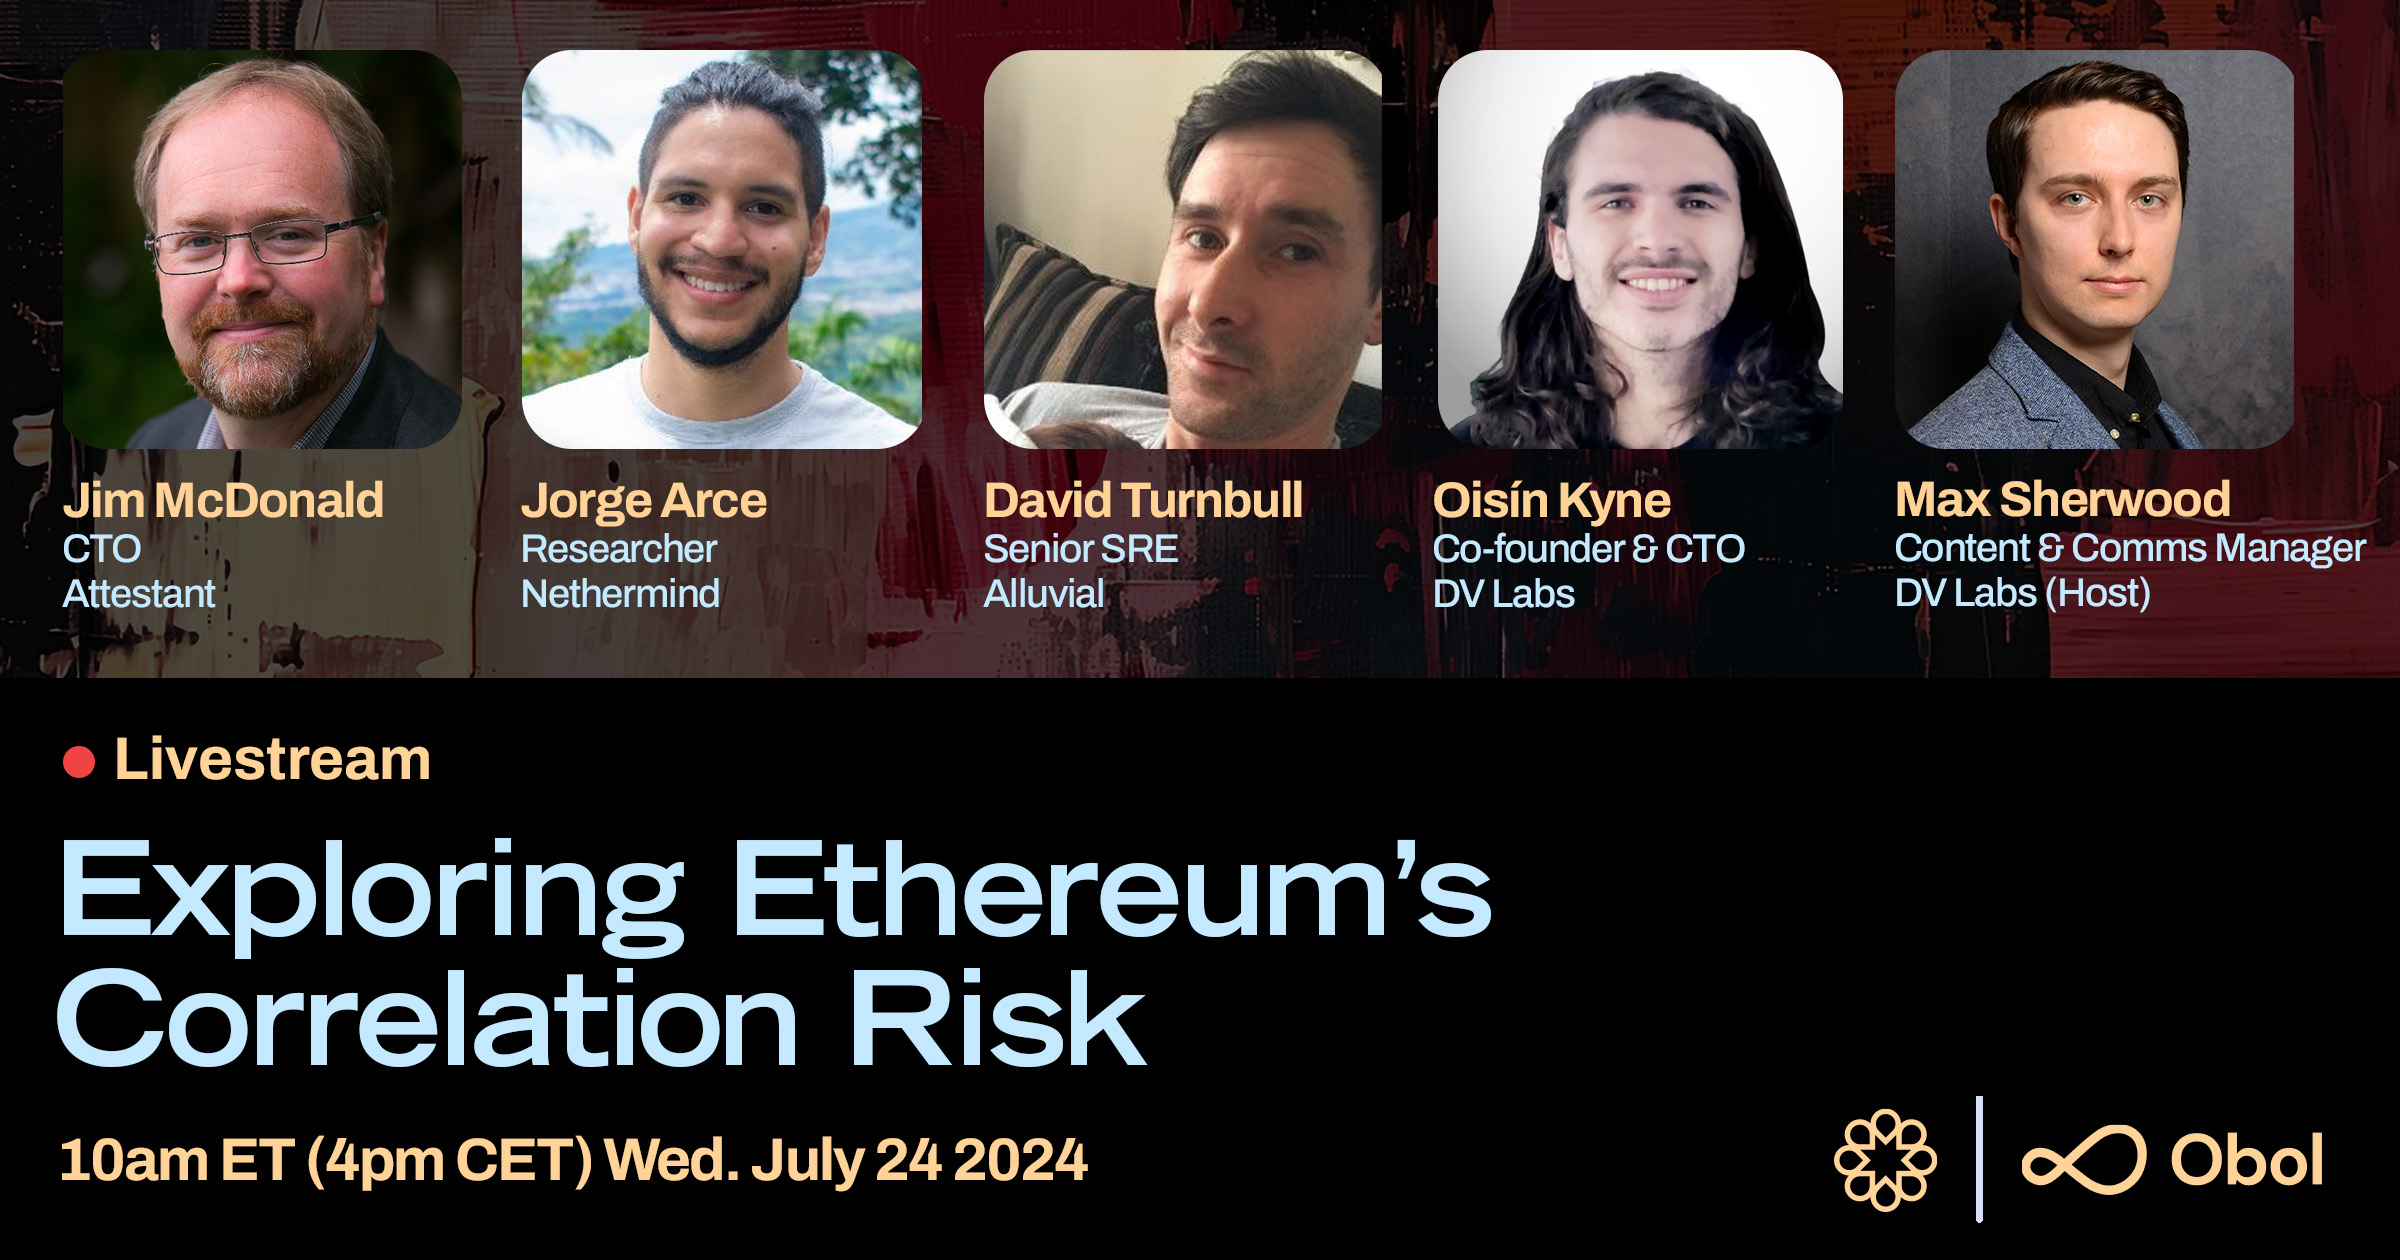 Event: “Exploring Ethereum's Correlation Risk”